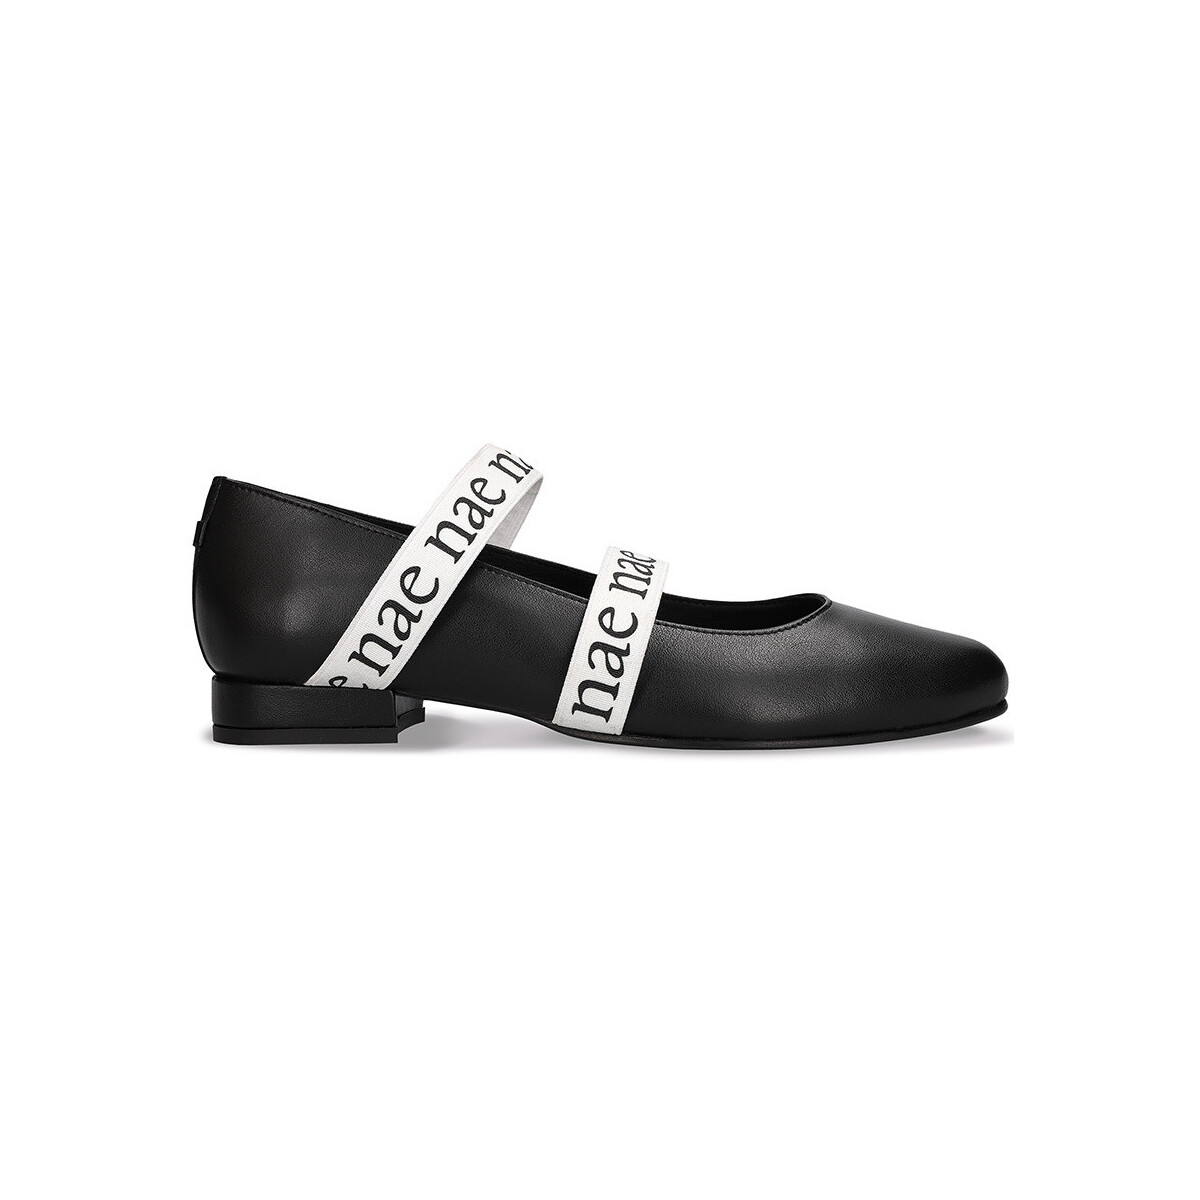 Schuhe Damen Derby-Schuhe Nae Vegan Shoes Aure_Black Schwarz